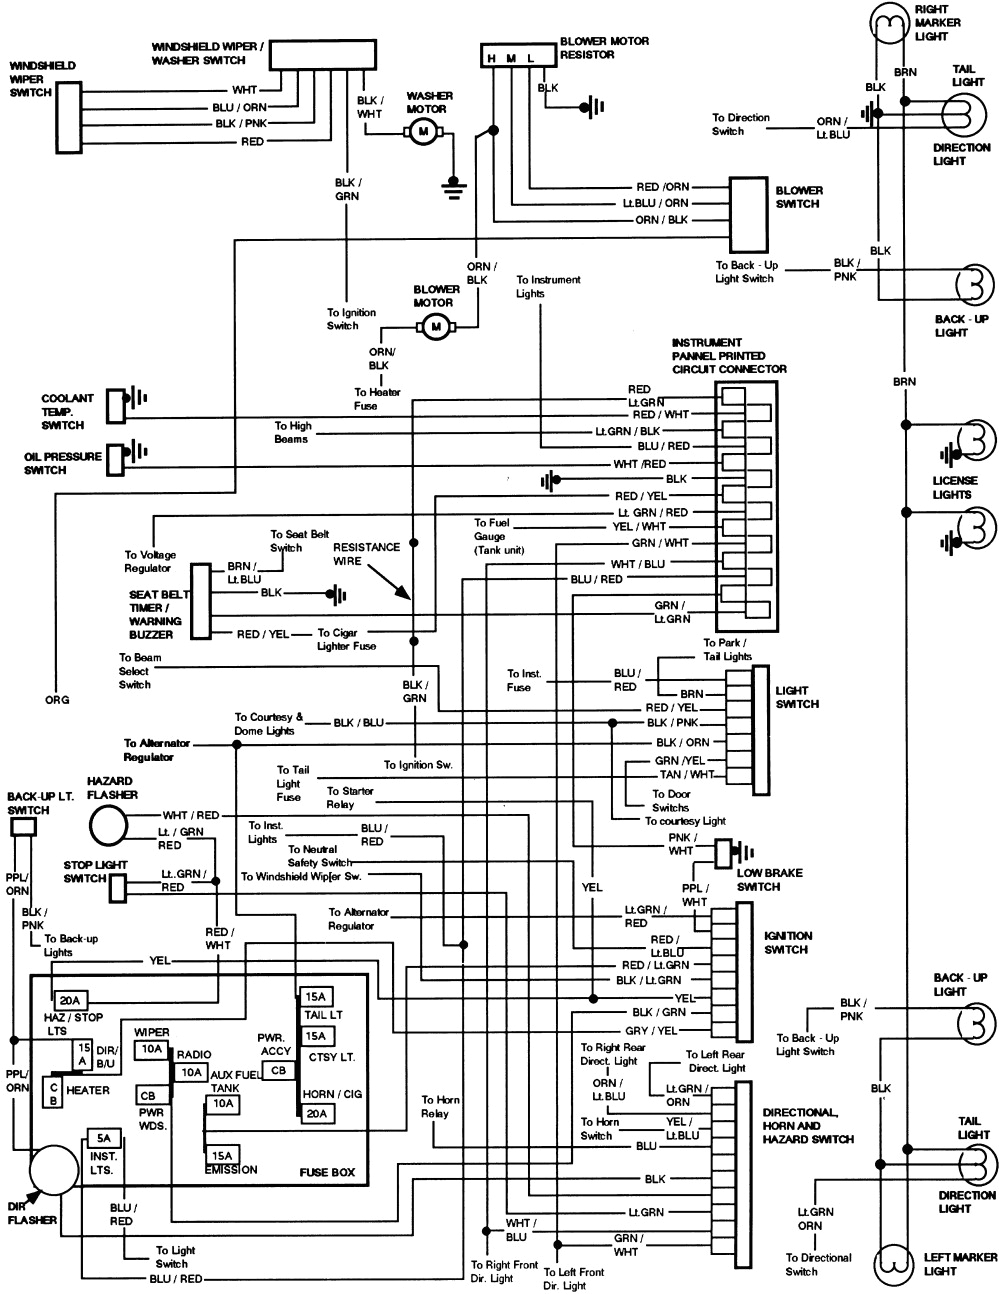 f550 super duty wiring diagram wiring diagram ford f550 pto wiring diagram 2009 ford f550 wiring